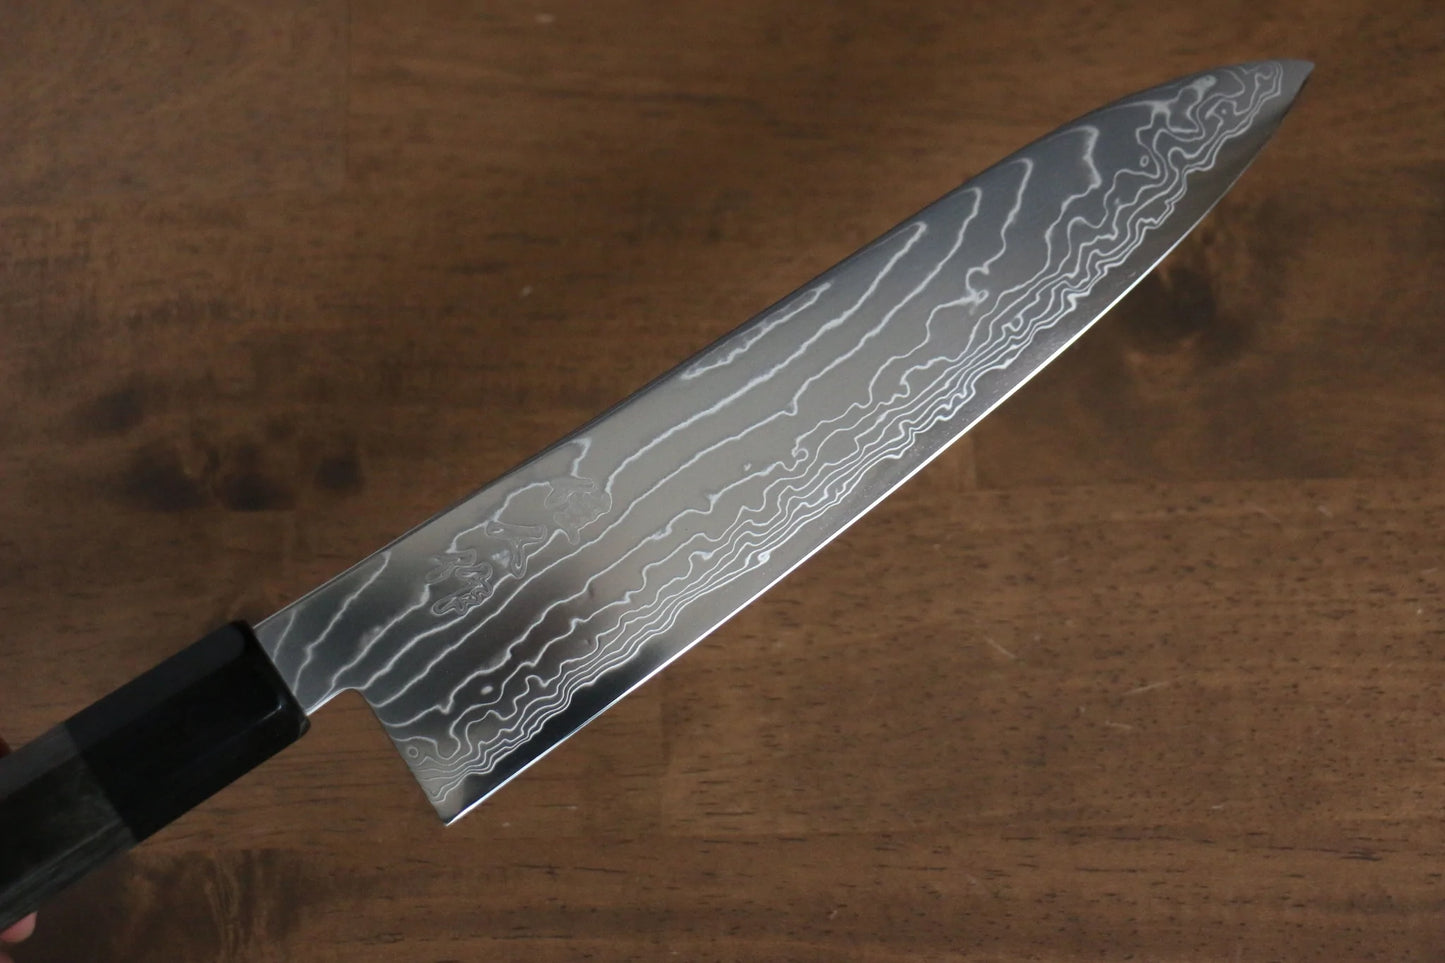 Kajin-Marke. Spezial-Kobaltstahl, Damaststahl, Gyuto-Mehrzweckmesser, japanisches Messer, 210 mm, grauer Pakka-Holzgriff